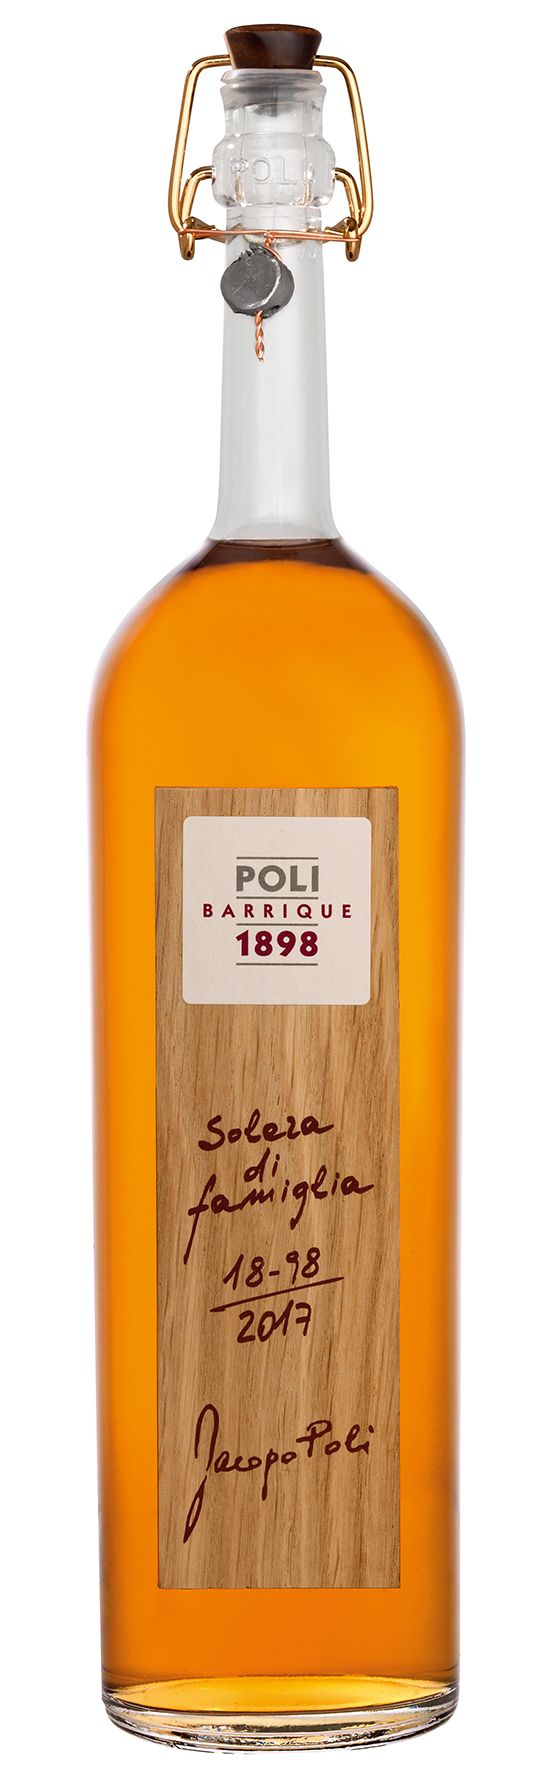 Poli Barrique - Solera di Famiglia 55%vol. 0,7l